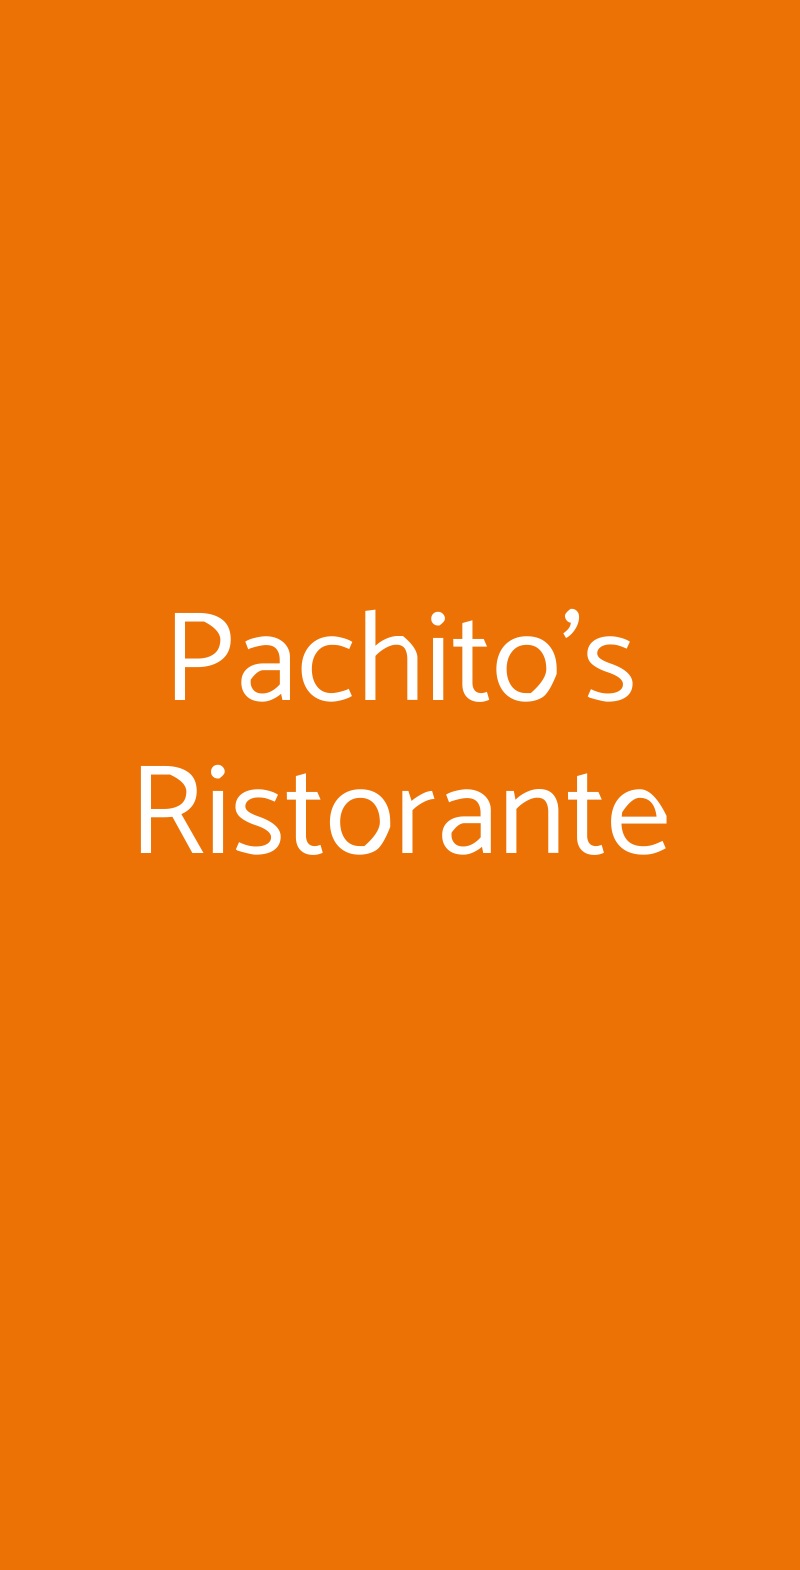 Pachito's Ristorante Correggio menù 1 pagina